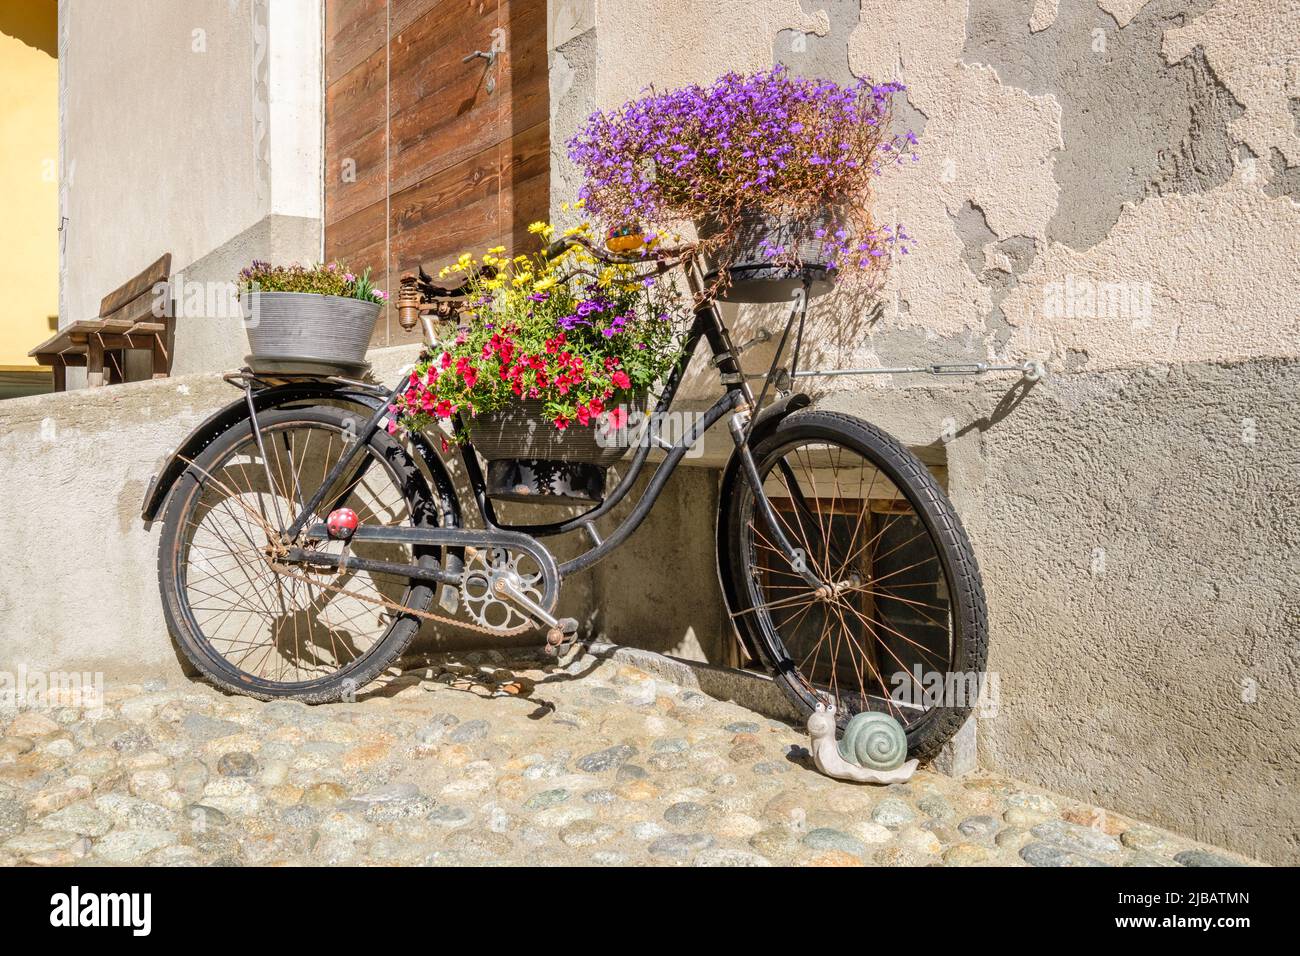 Ein altes rostiges Fahrrad, dekoriert mit wunderschönen Blumen, im historischen Dorfzentrum von S-chanf (Oberes Engadine-Tal, Grisons, Schweiz) Stockfoto